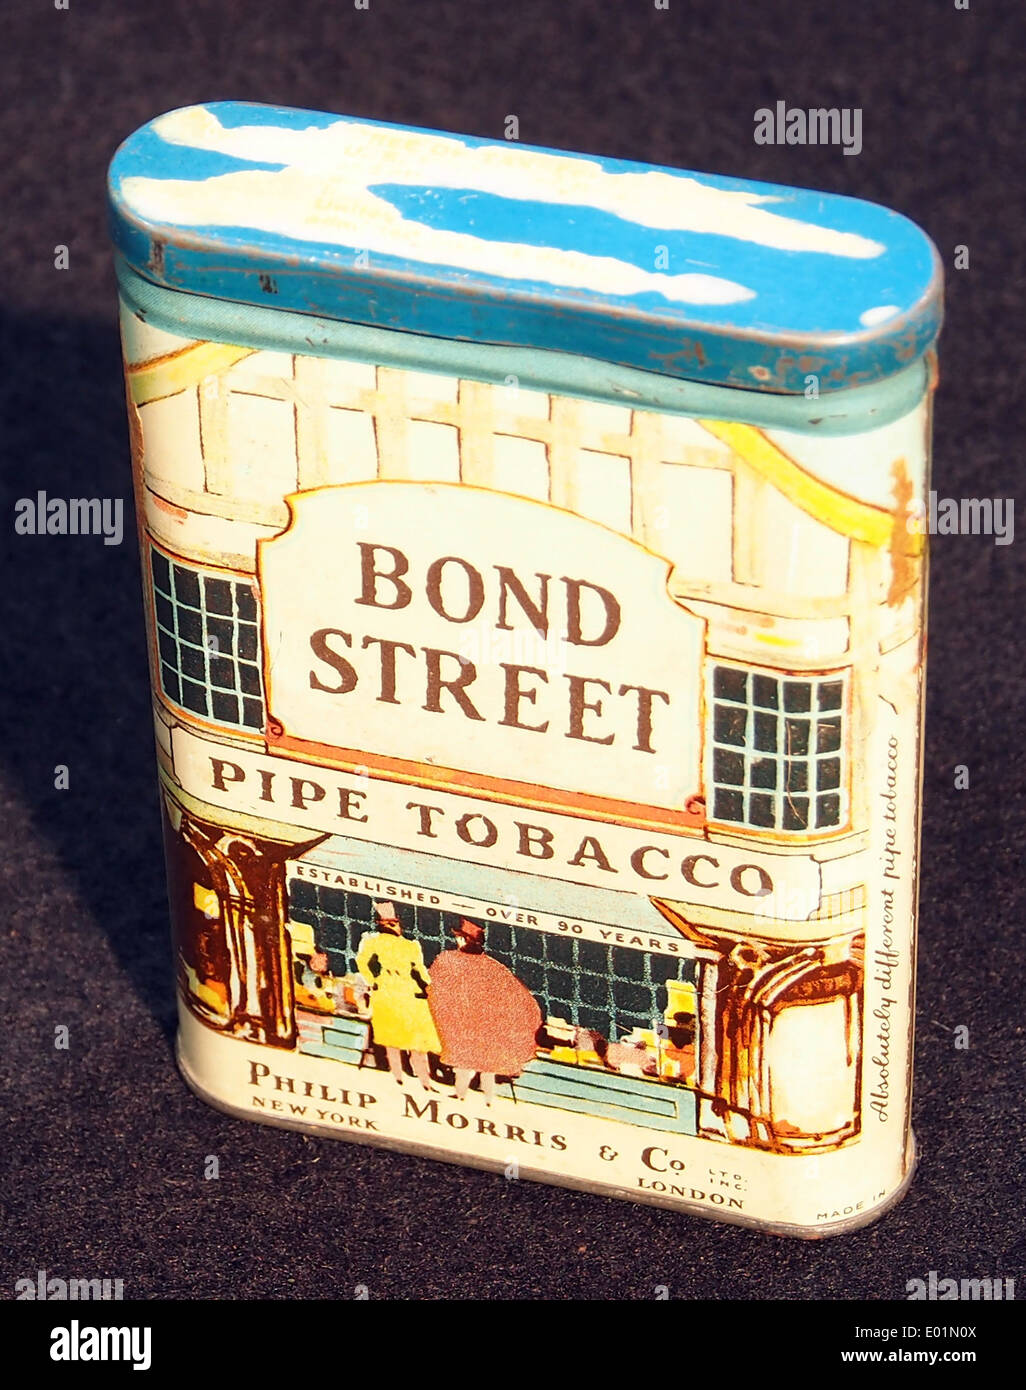 Bond Street el tabaco de pipa, estaño Fotografía de stock - Alamy